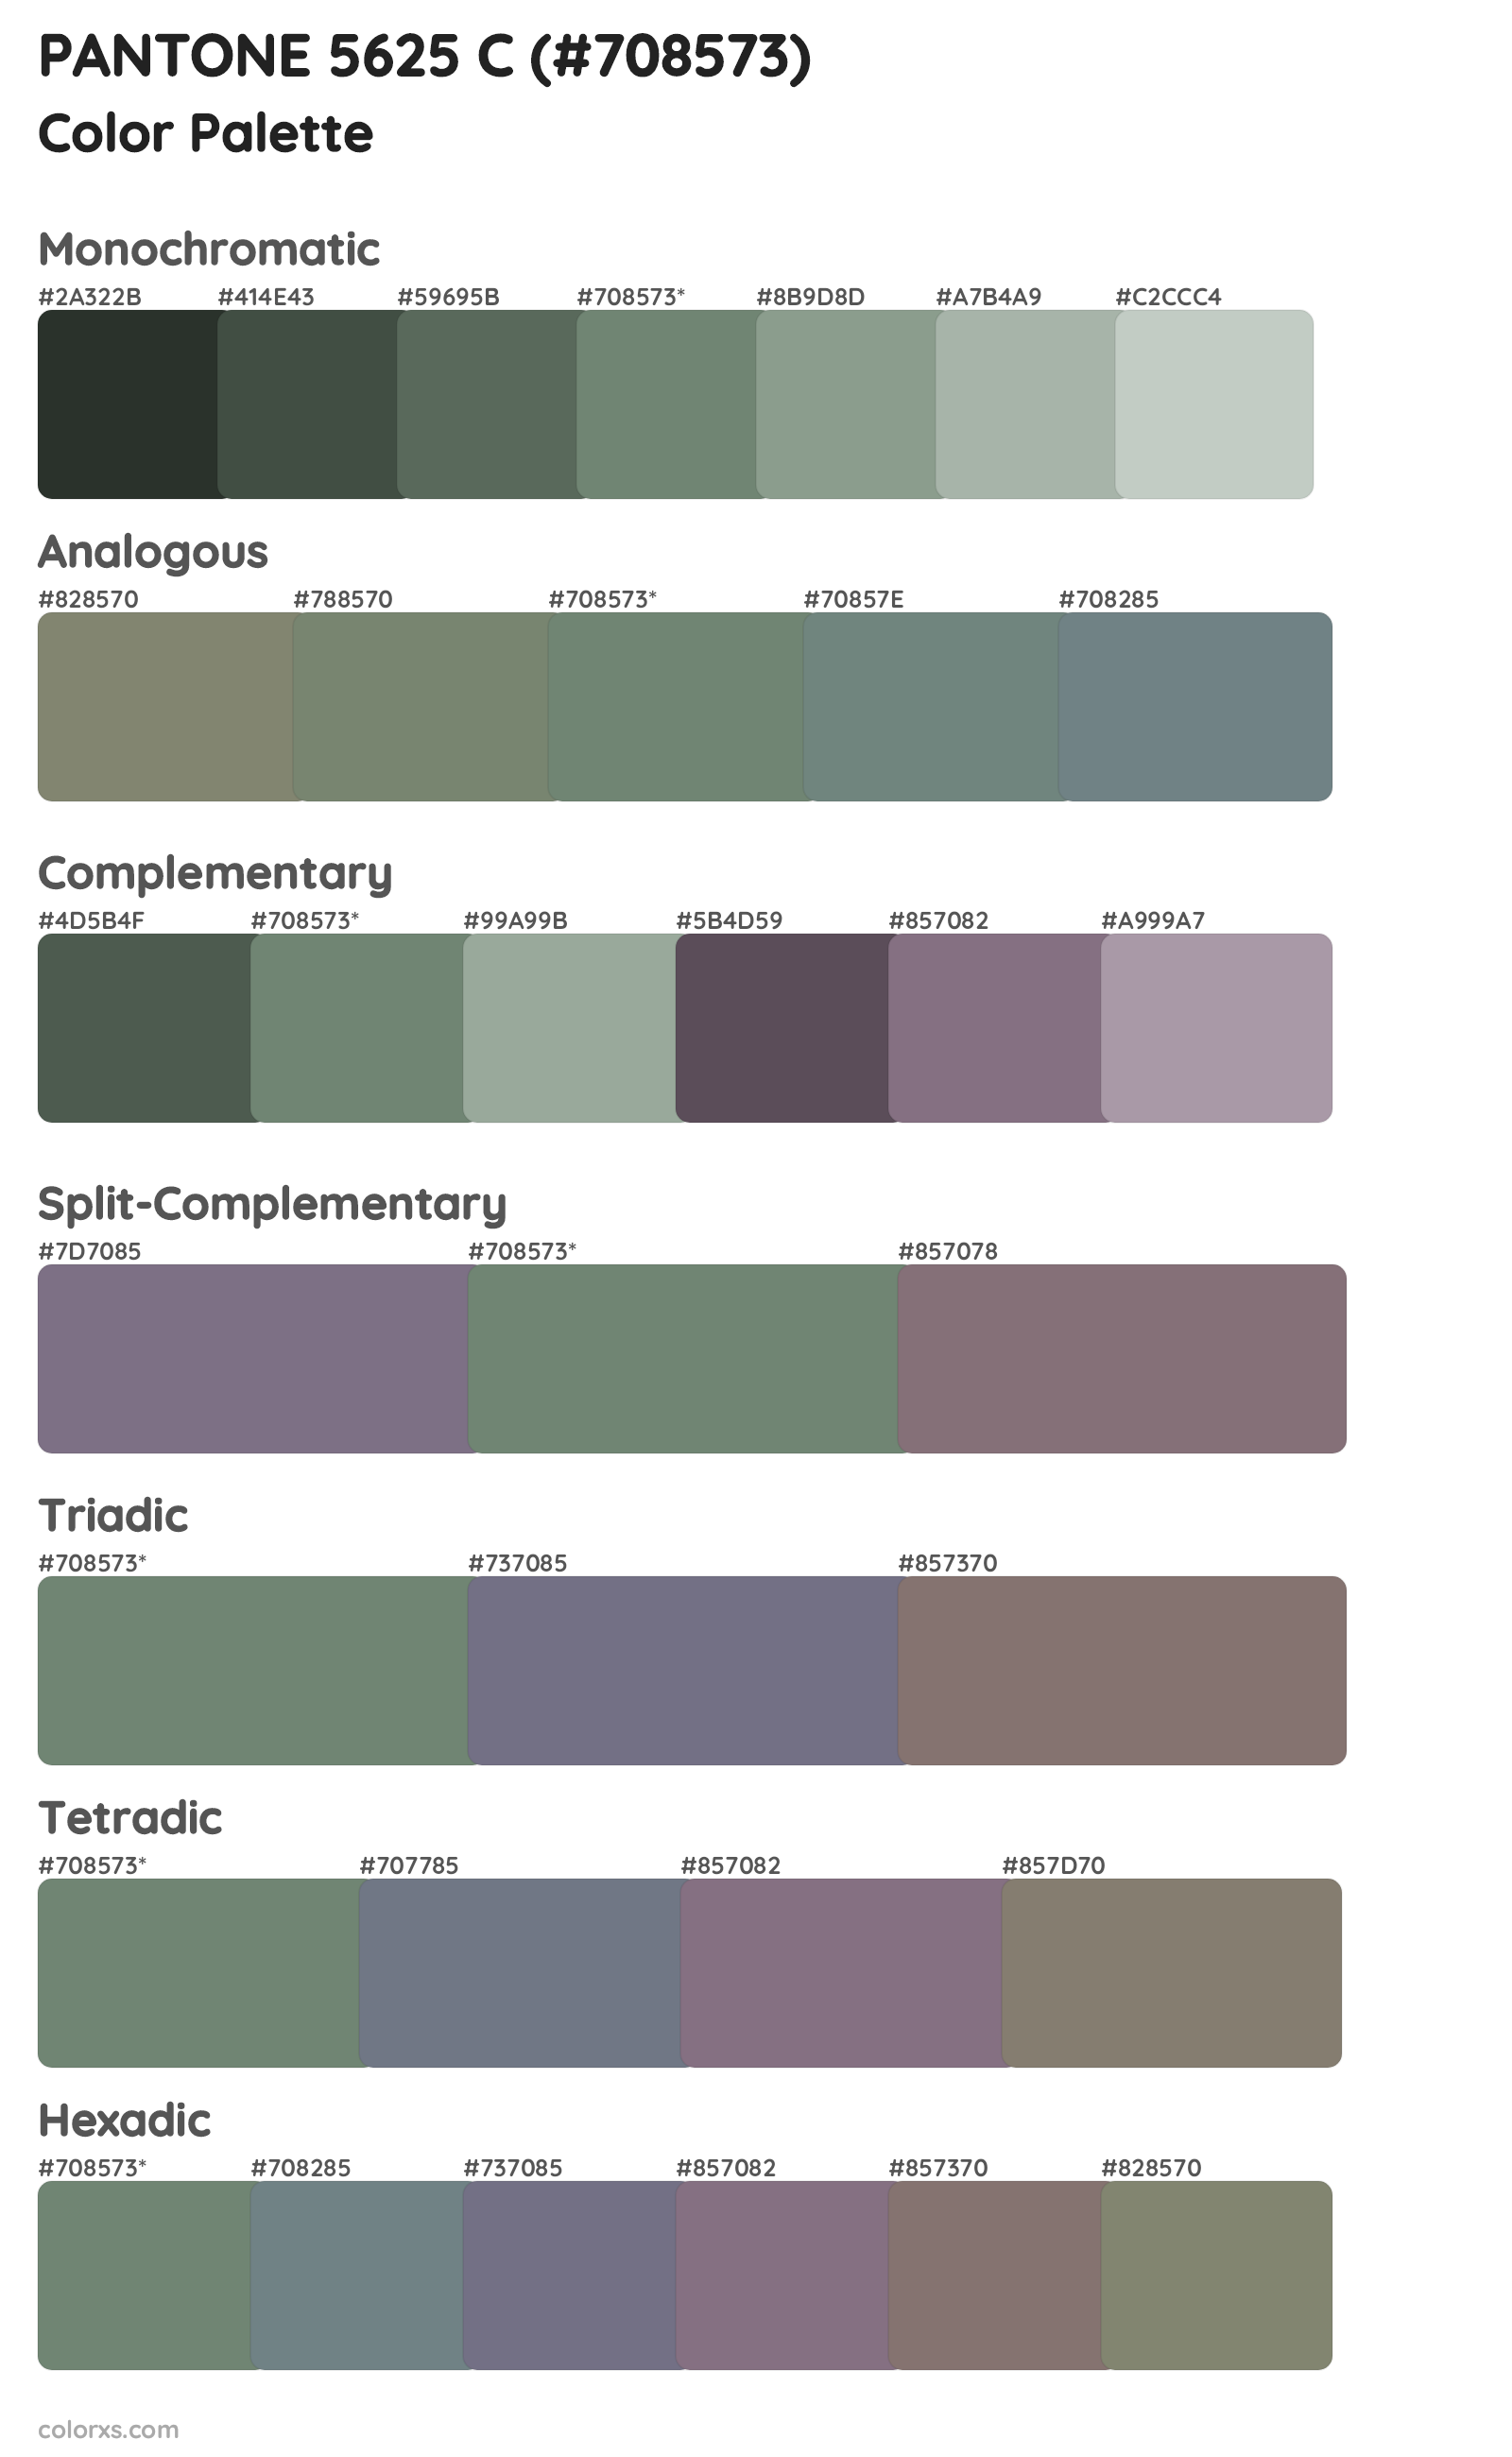 PANTONE 5625 C Color Scheme Palettes